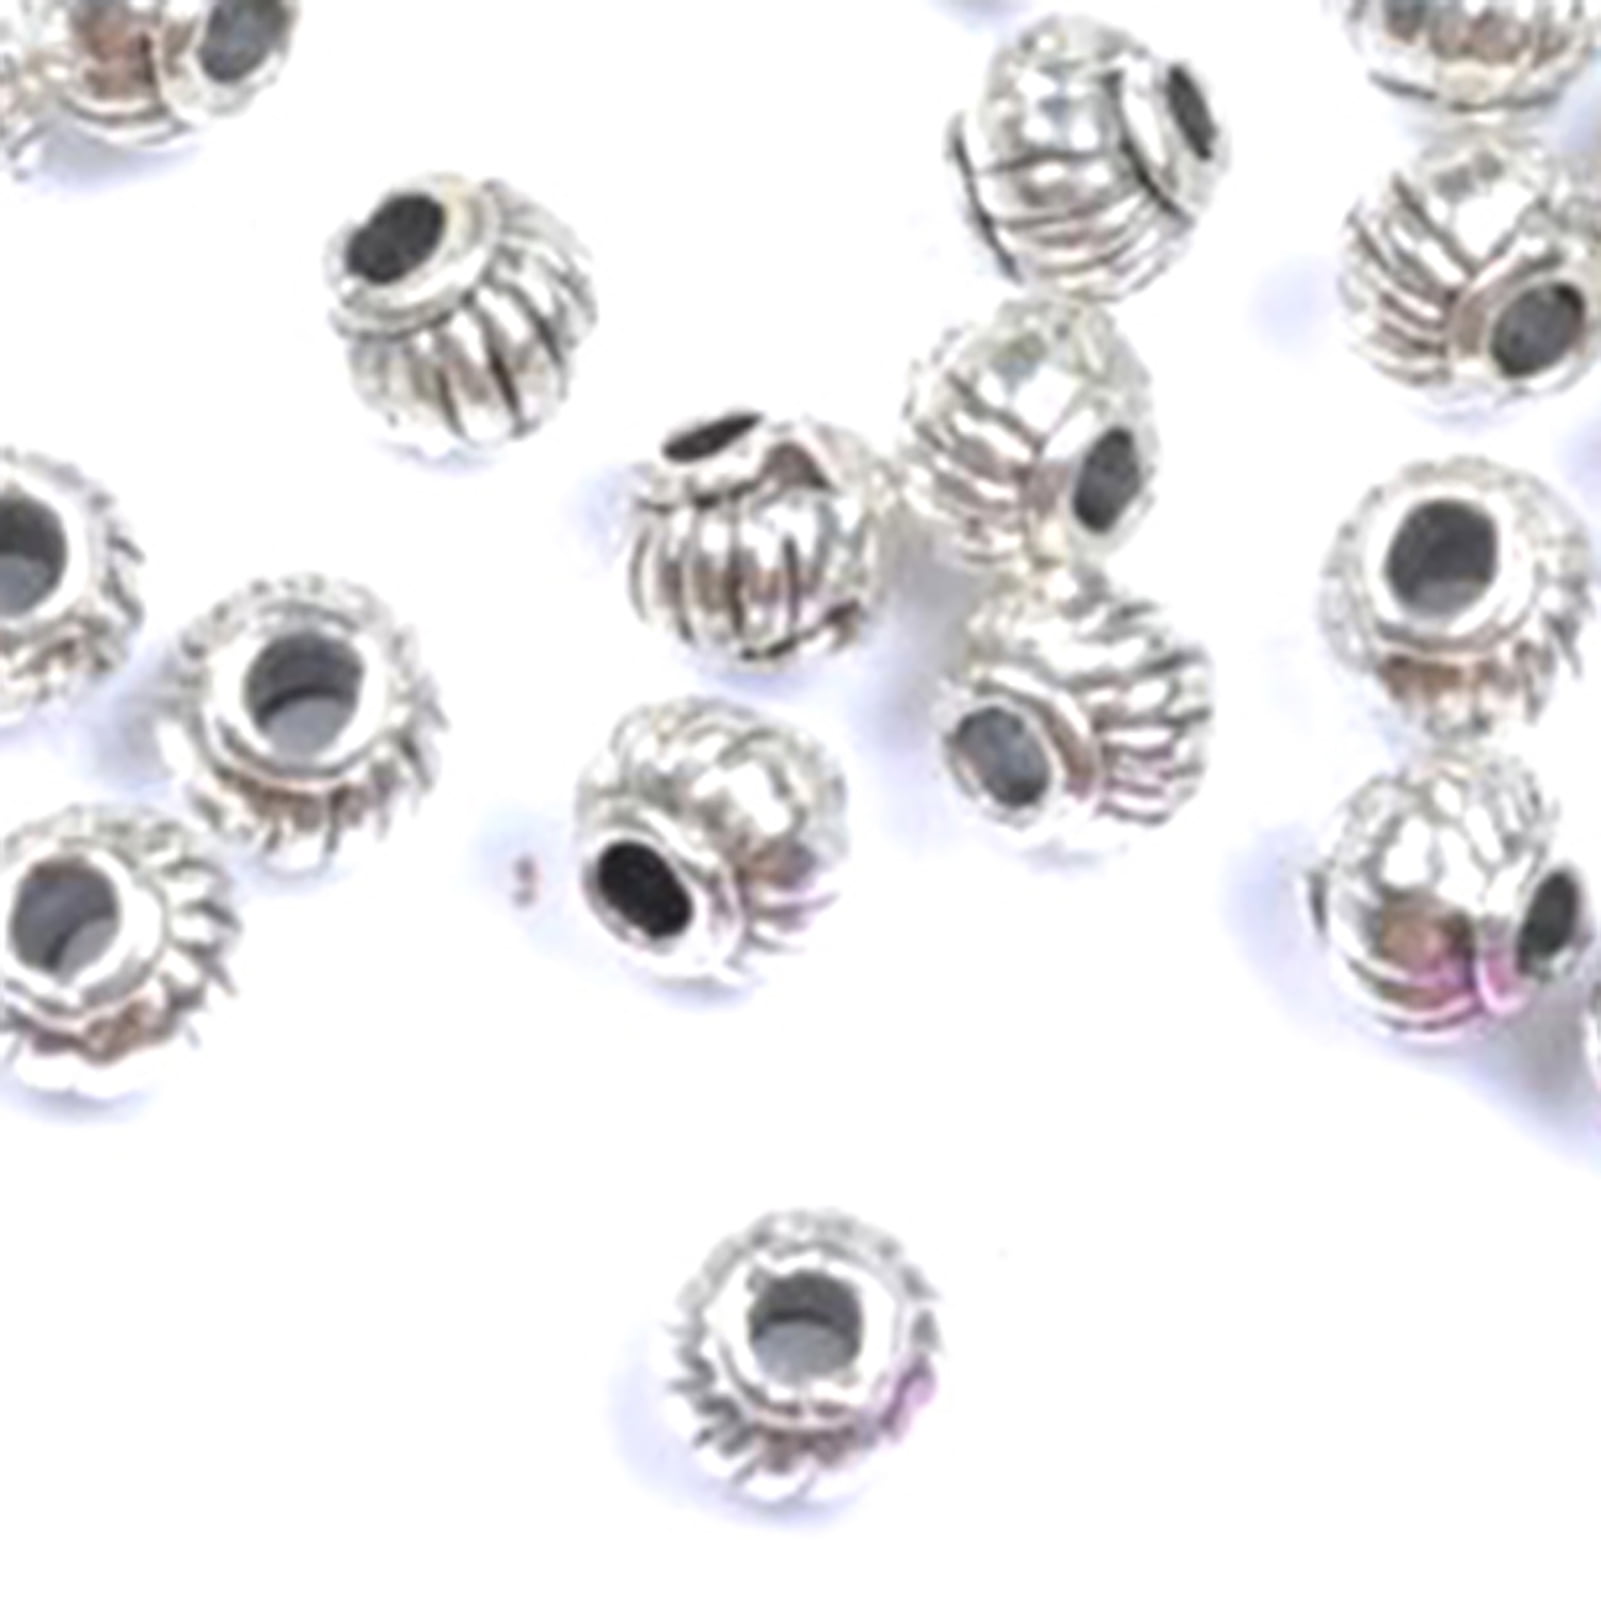 100pcs Tibetan Silver Spacer Beads Fit Charm Chaîne Artisanat À faire soi-même Jewelry Findings 